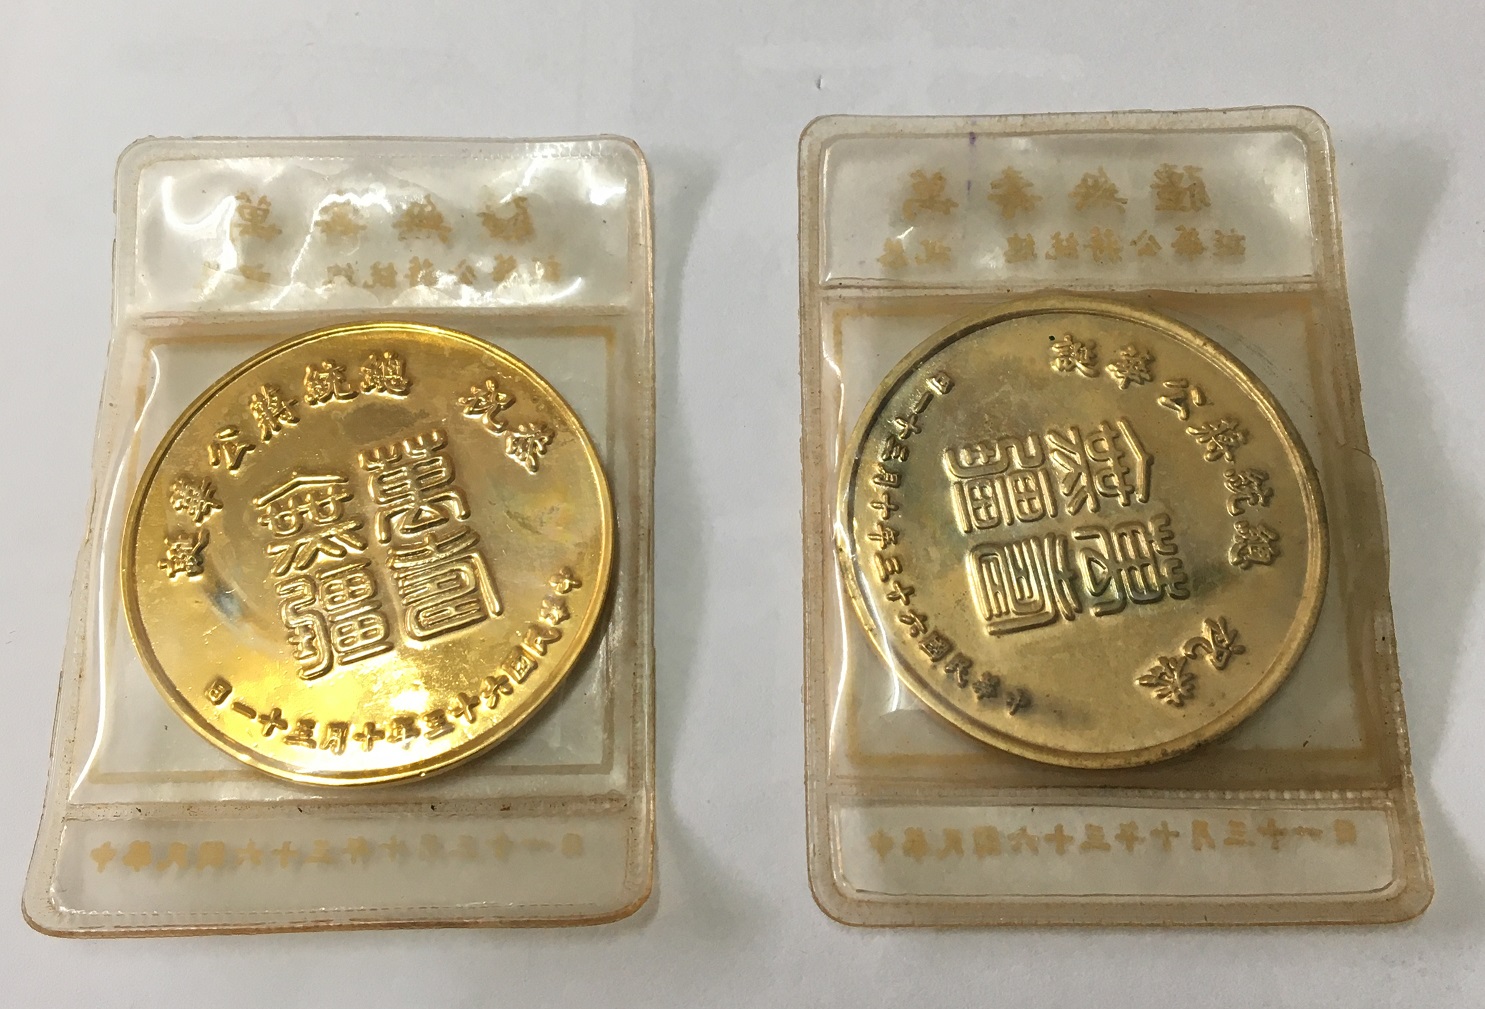 民國六十三年 恭祝  總統蔣公華誕 萬壽無疆 紀念幣兩枚